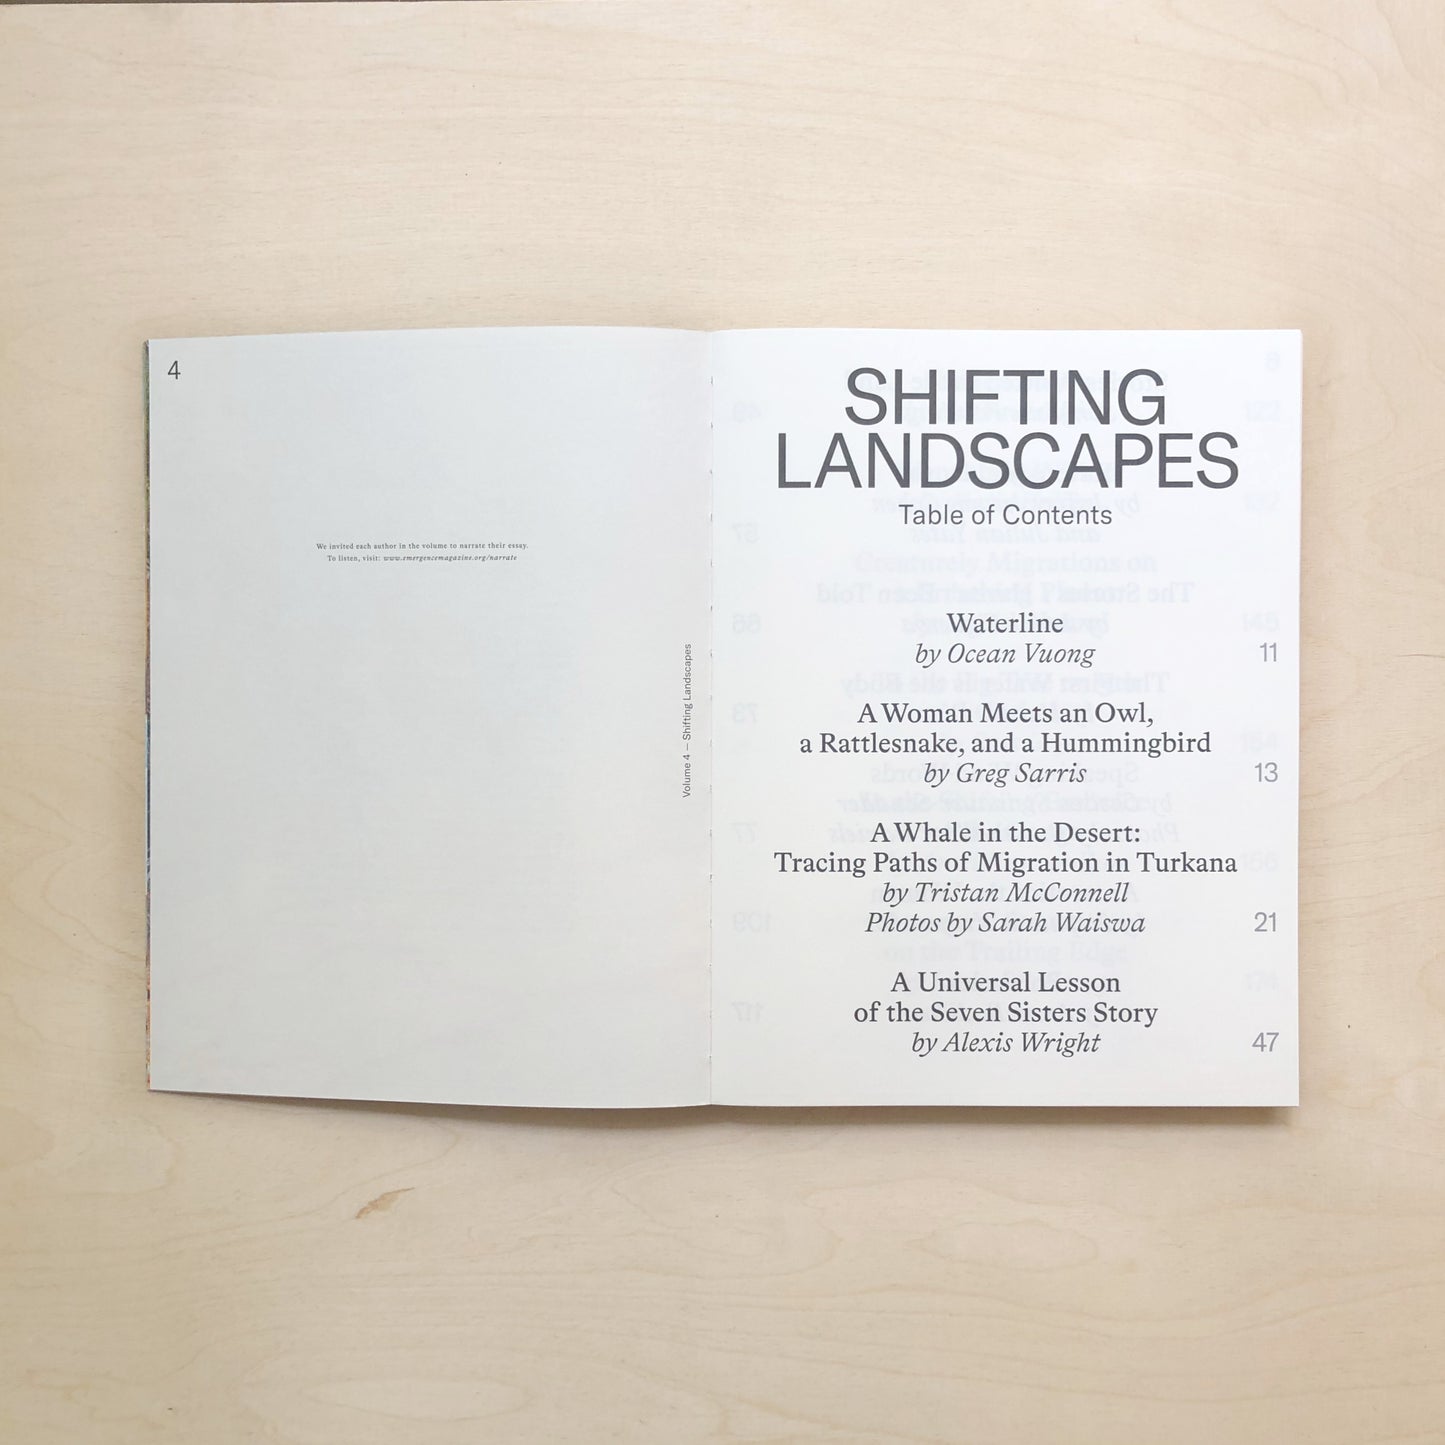 Emergence Magazine Vol. 4 - Shifting Landscapes